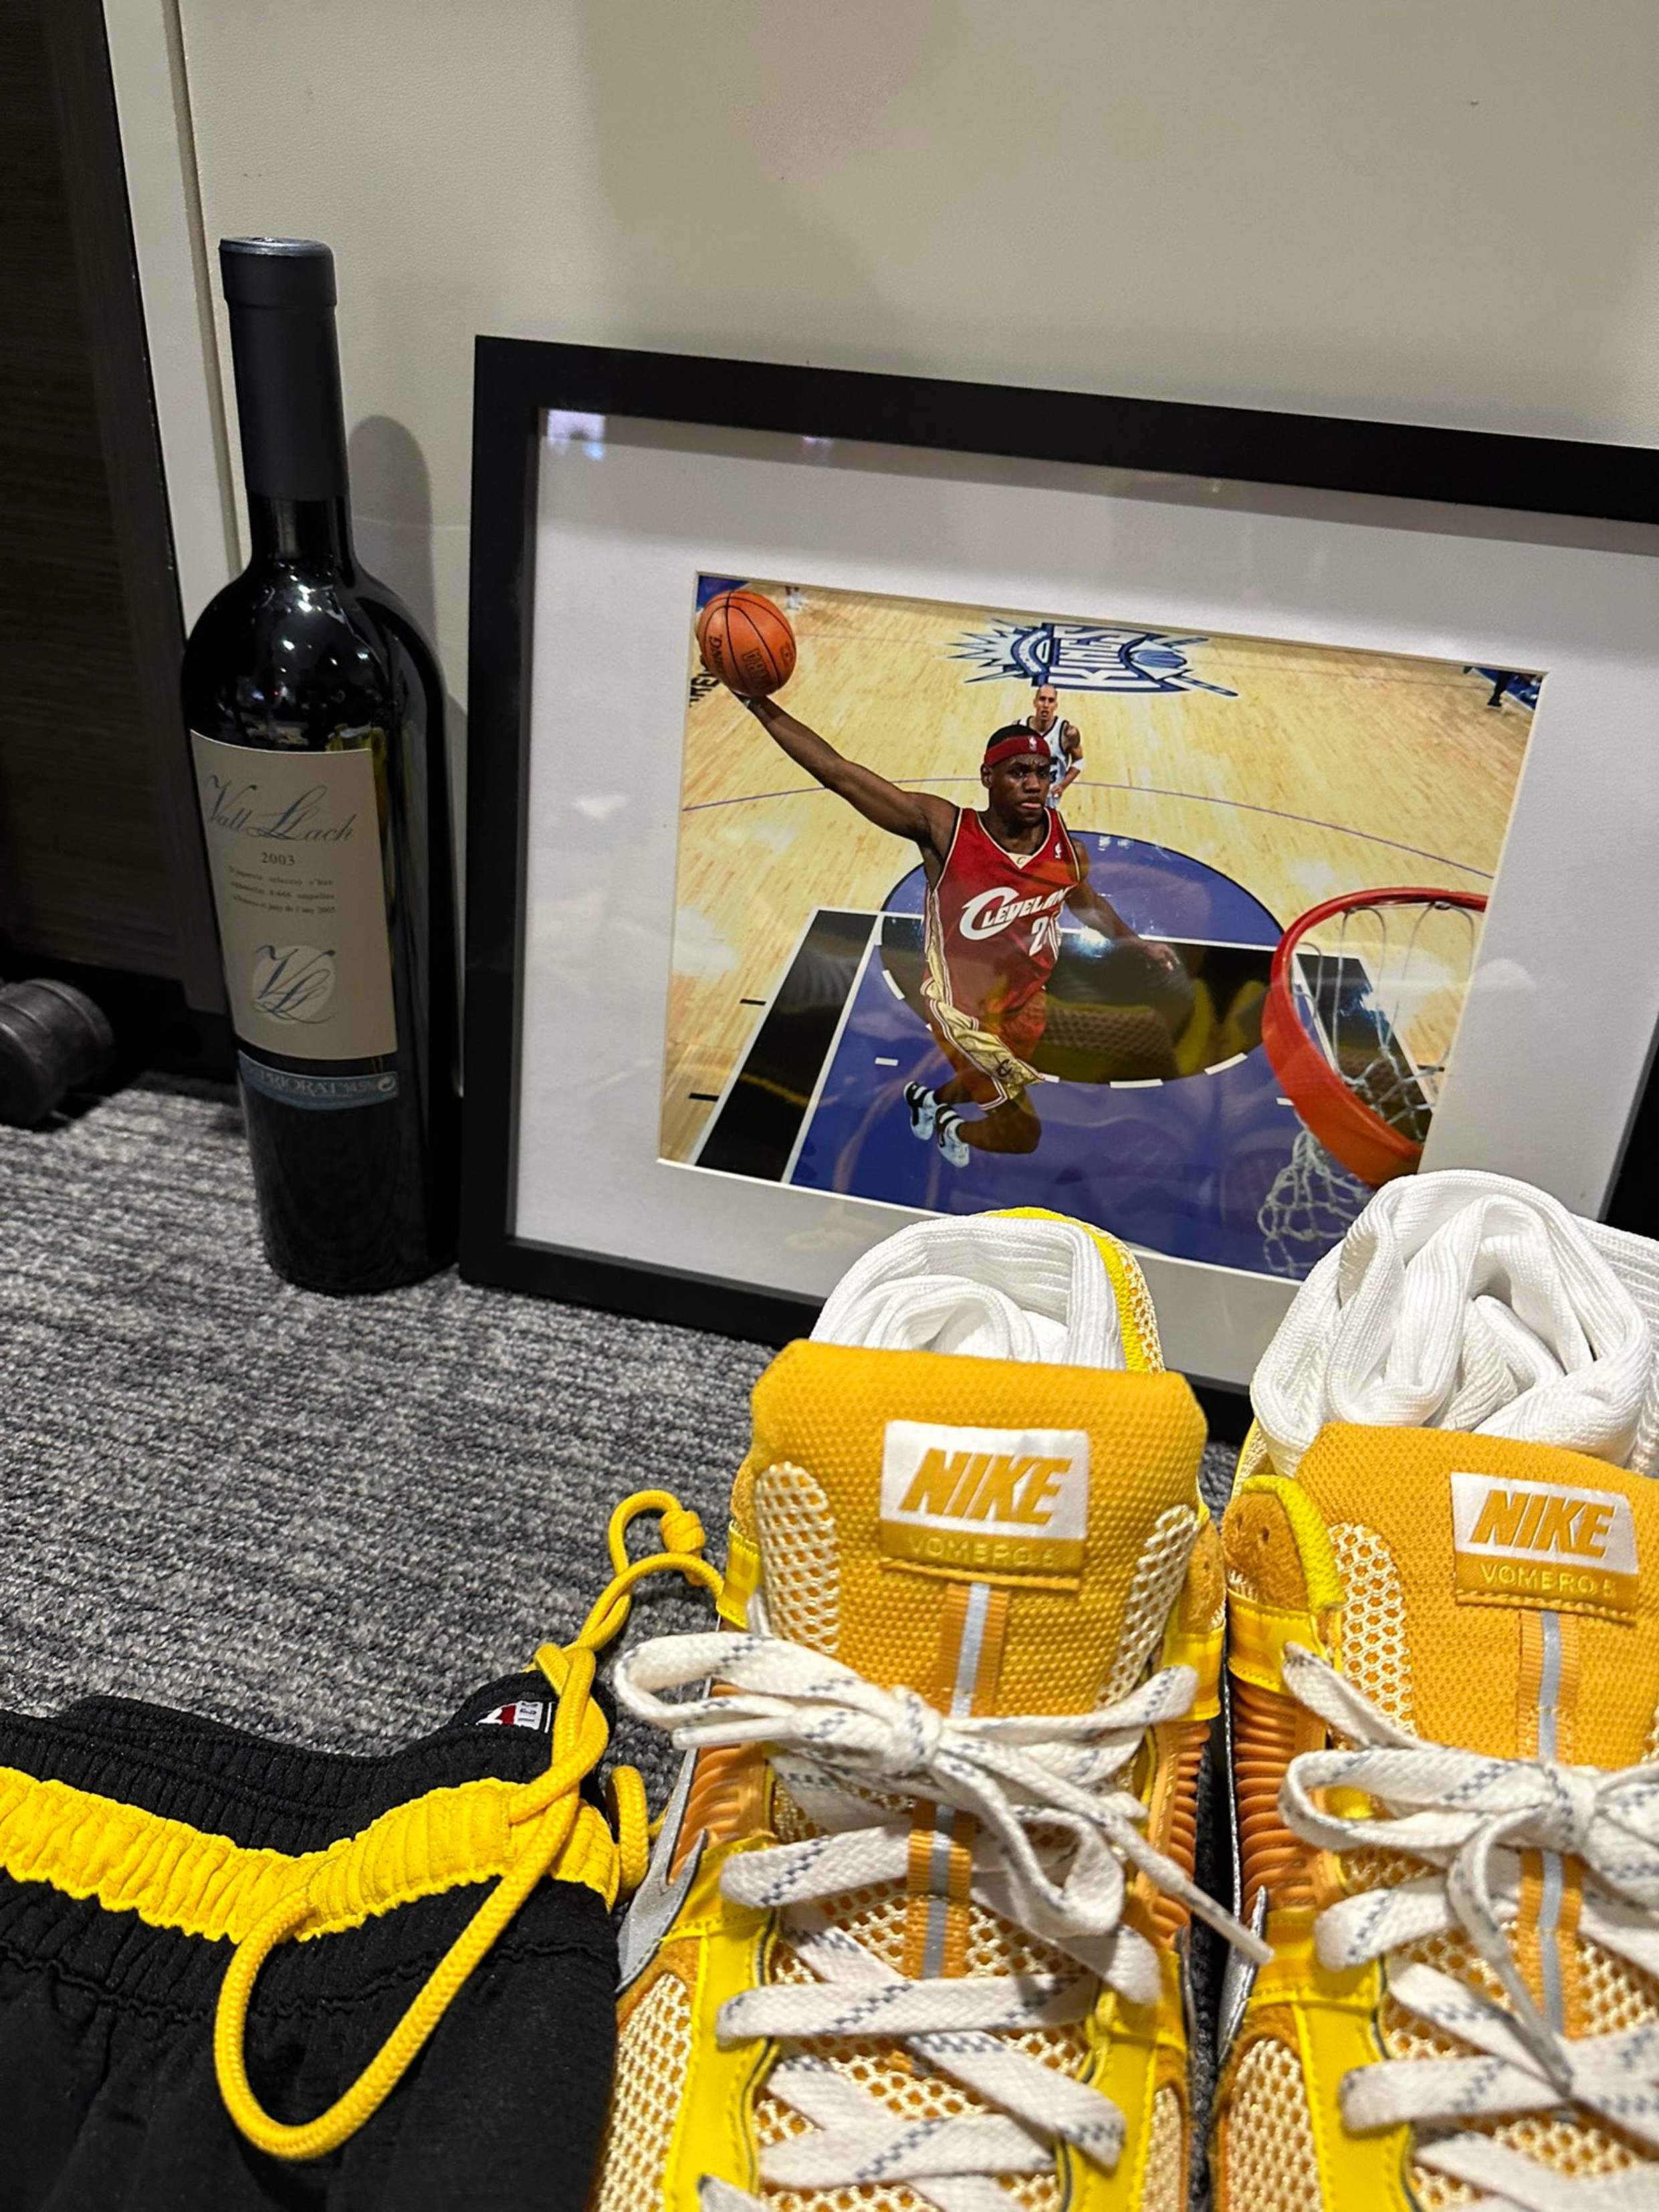 Un vi català es cola a la celebració de LeBron James pels 20 anys a l'NBA